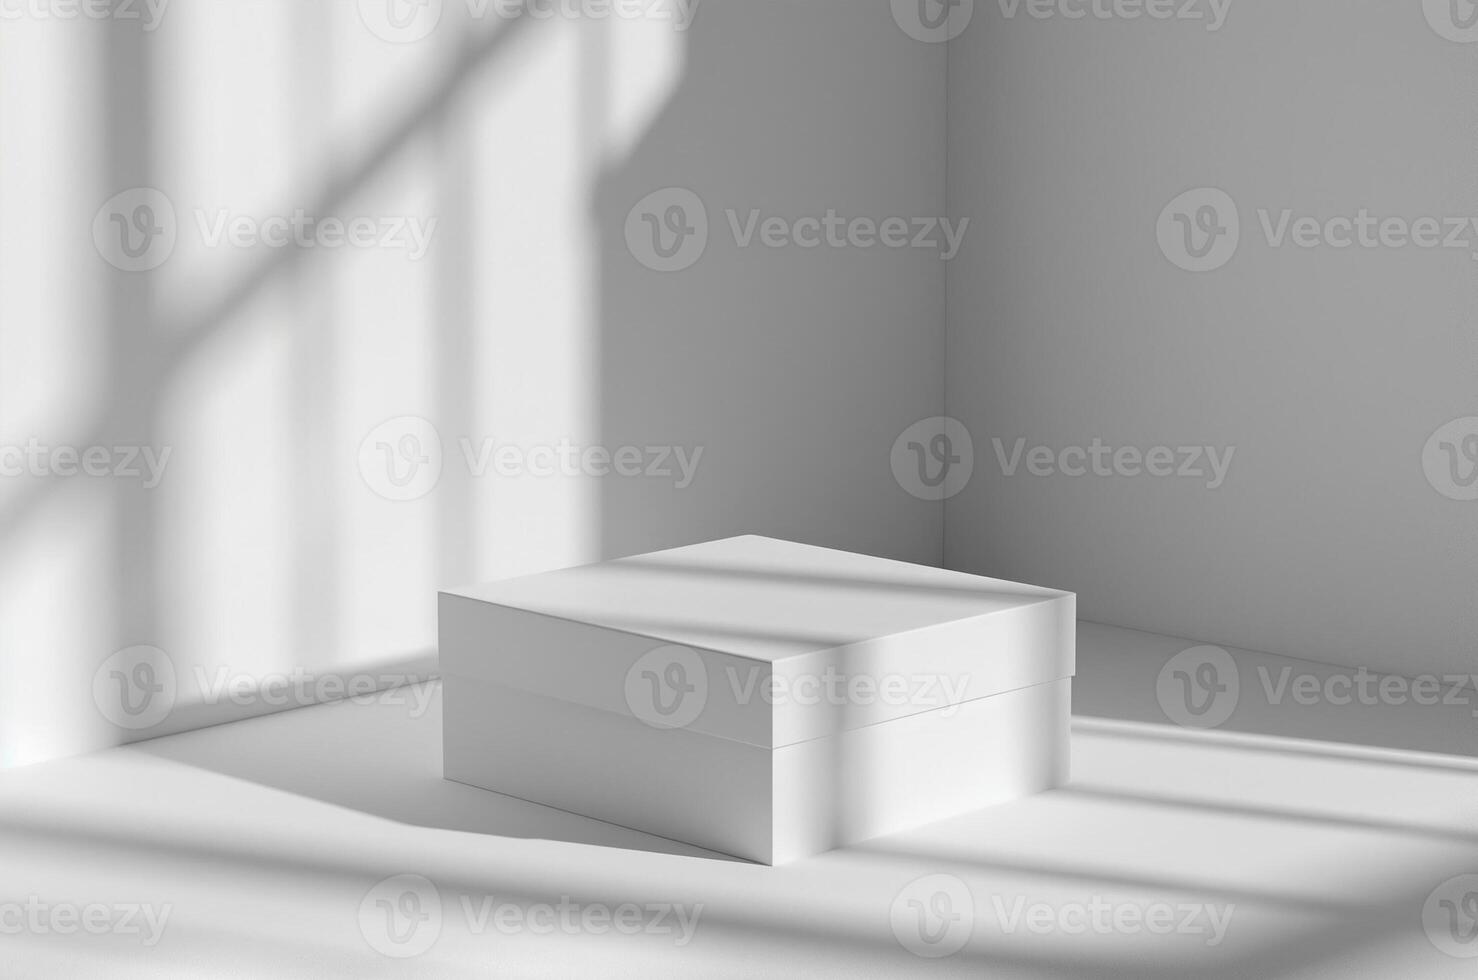 Attrappe, Lehrmodell, Simulation Weiß Kasten, Fenster Schatten foto